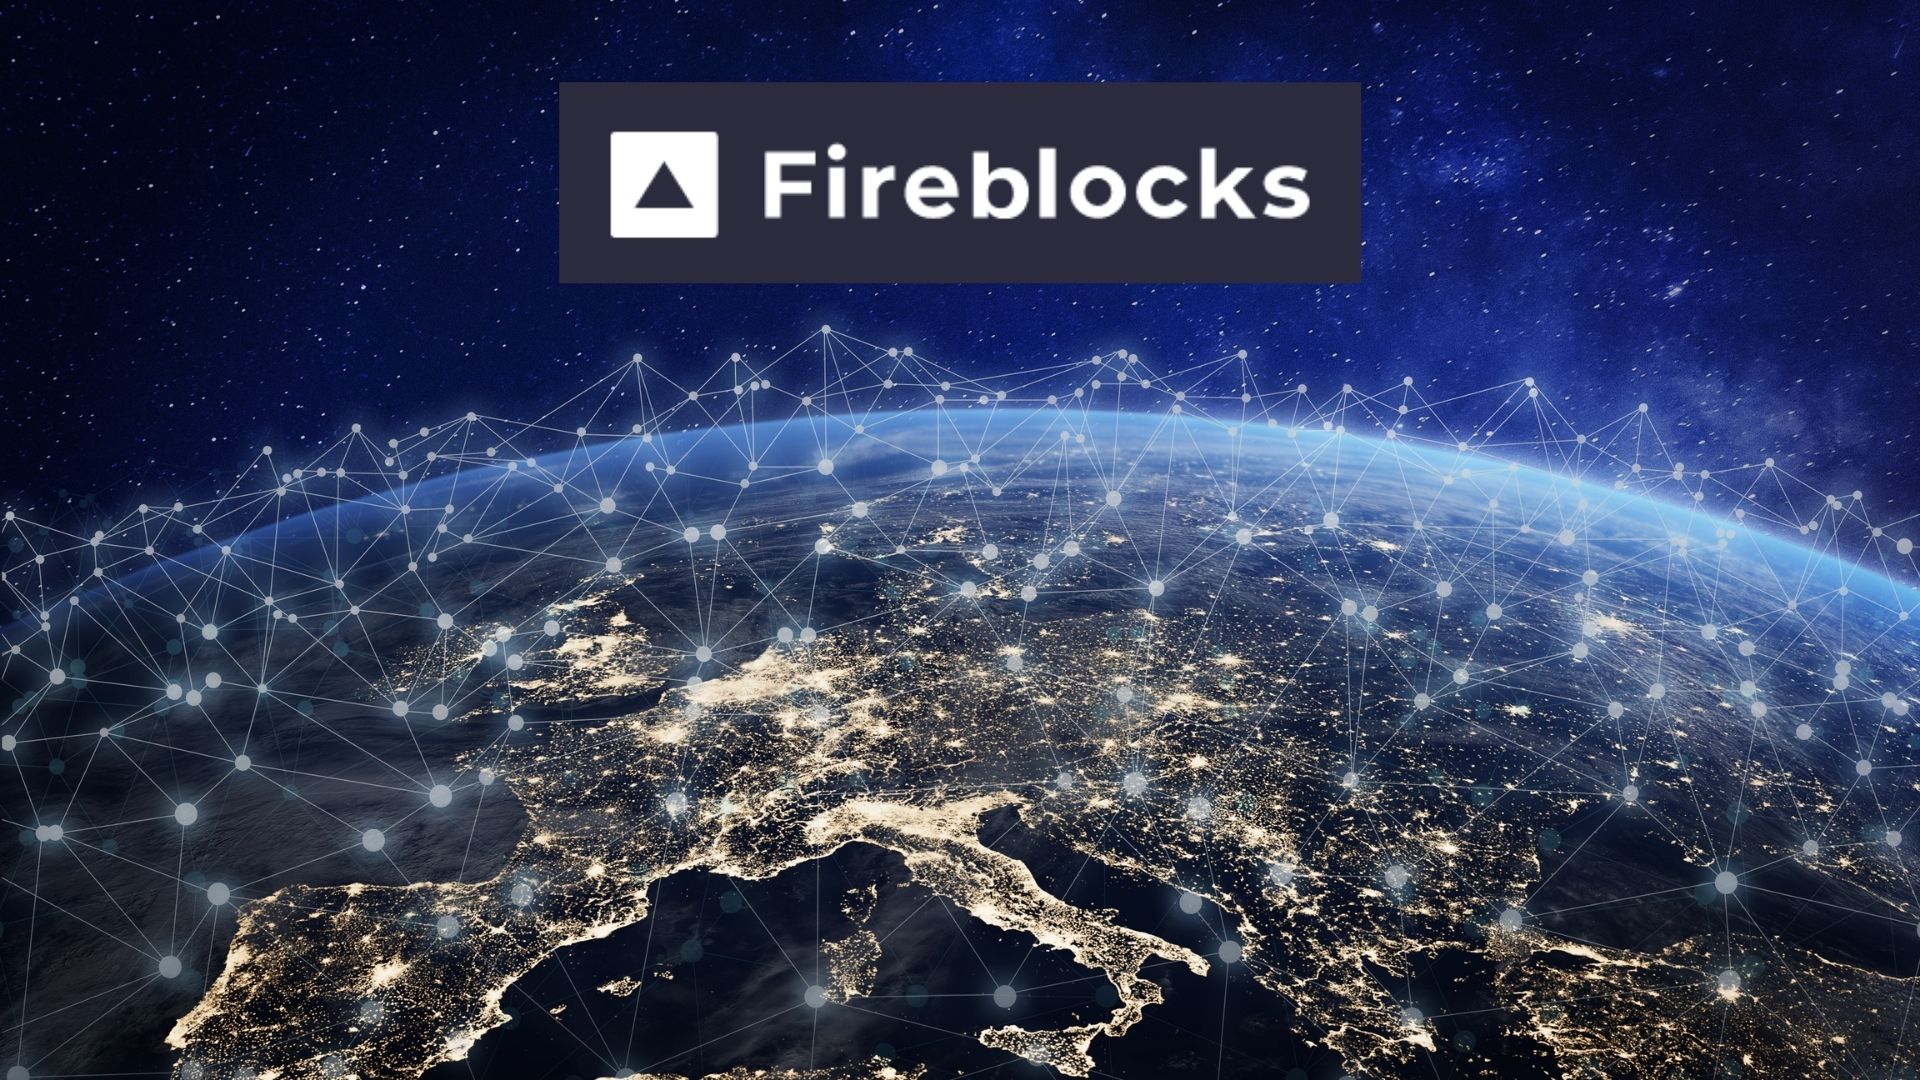 aave blockchain guvenlik sirketi fireblocks ile ortak oldu